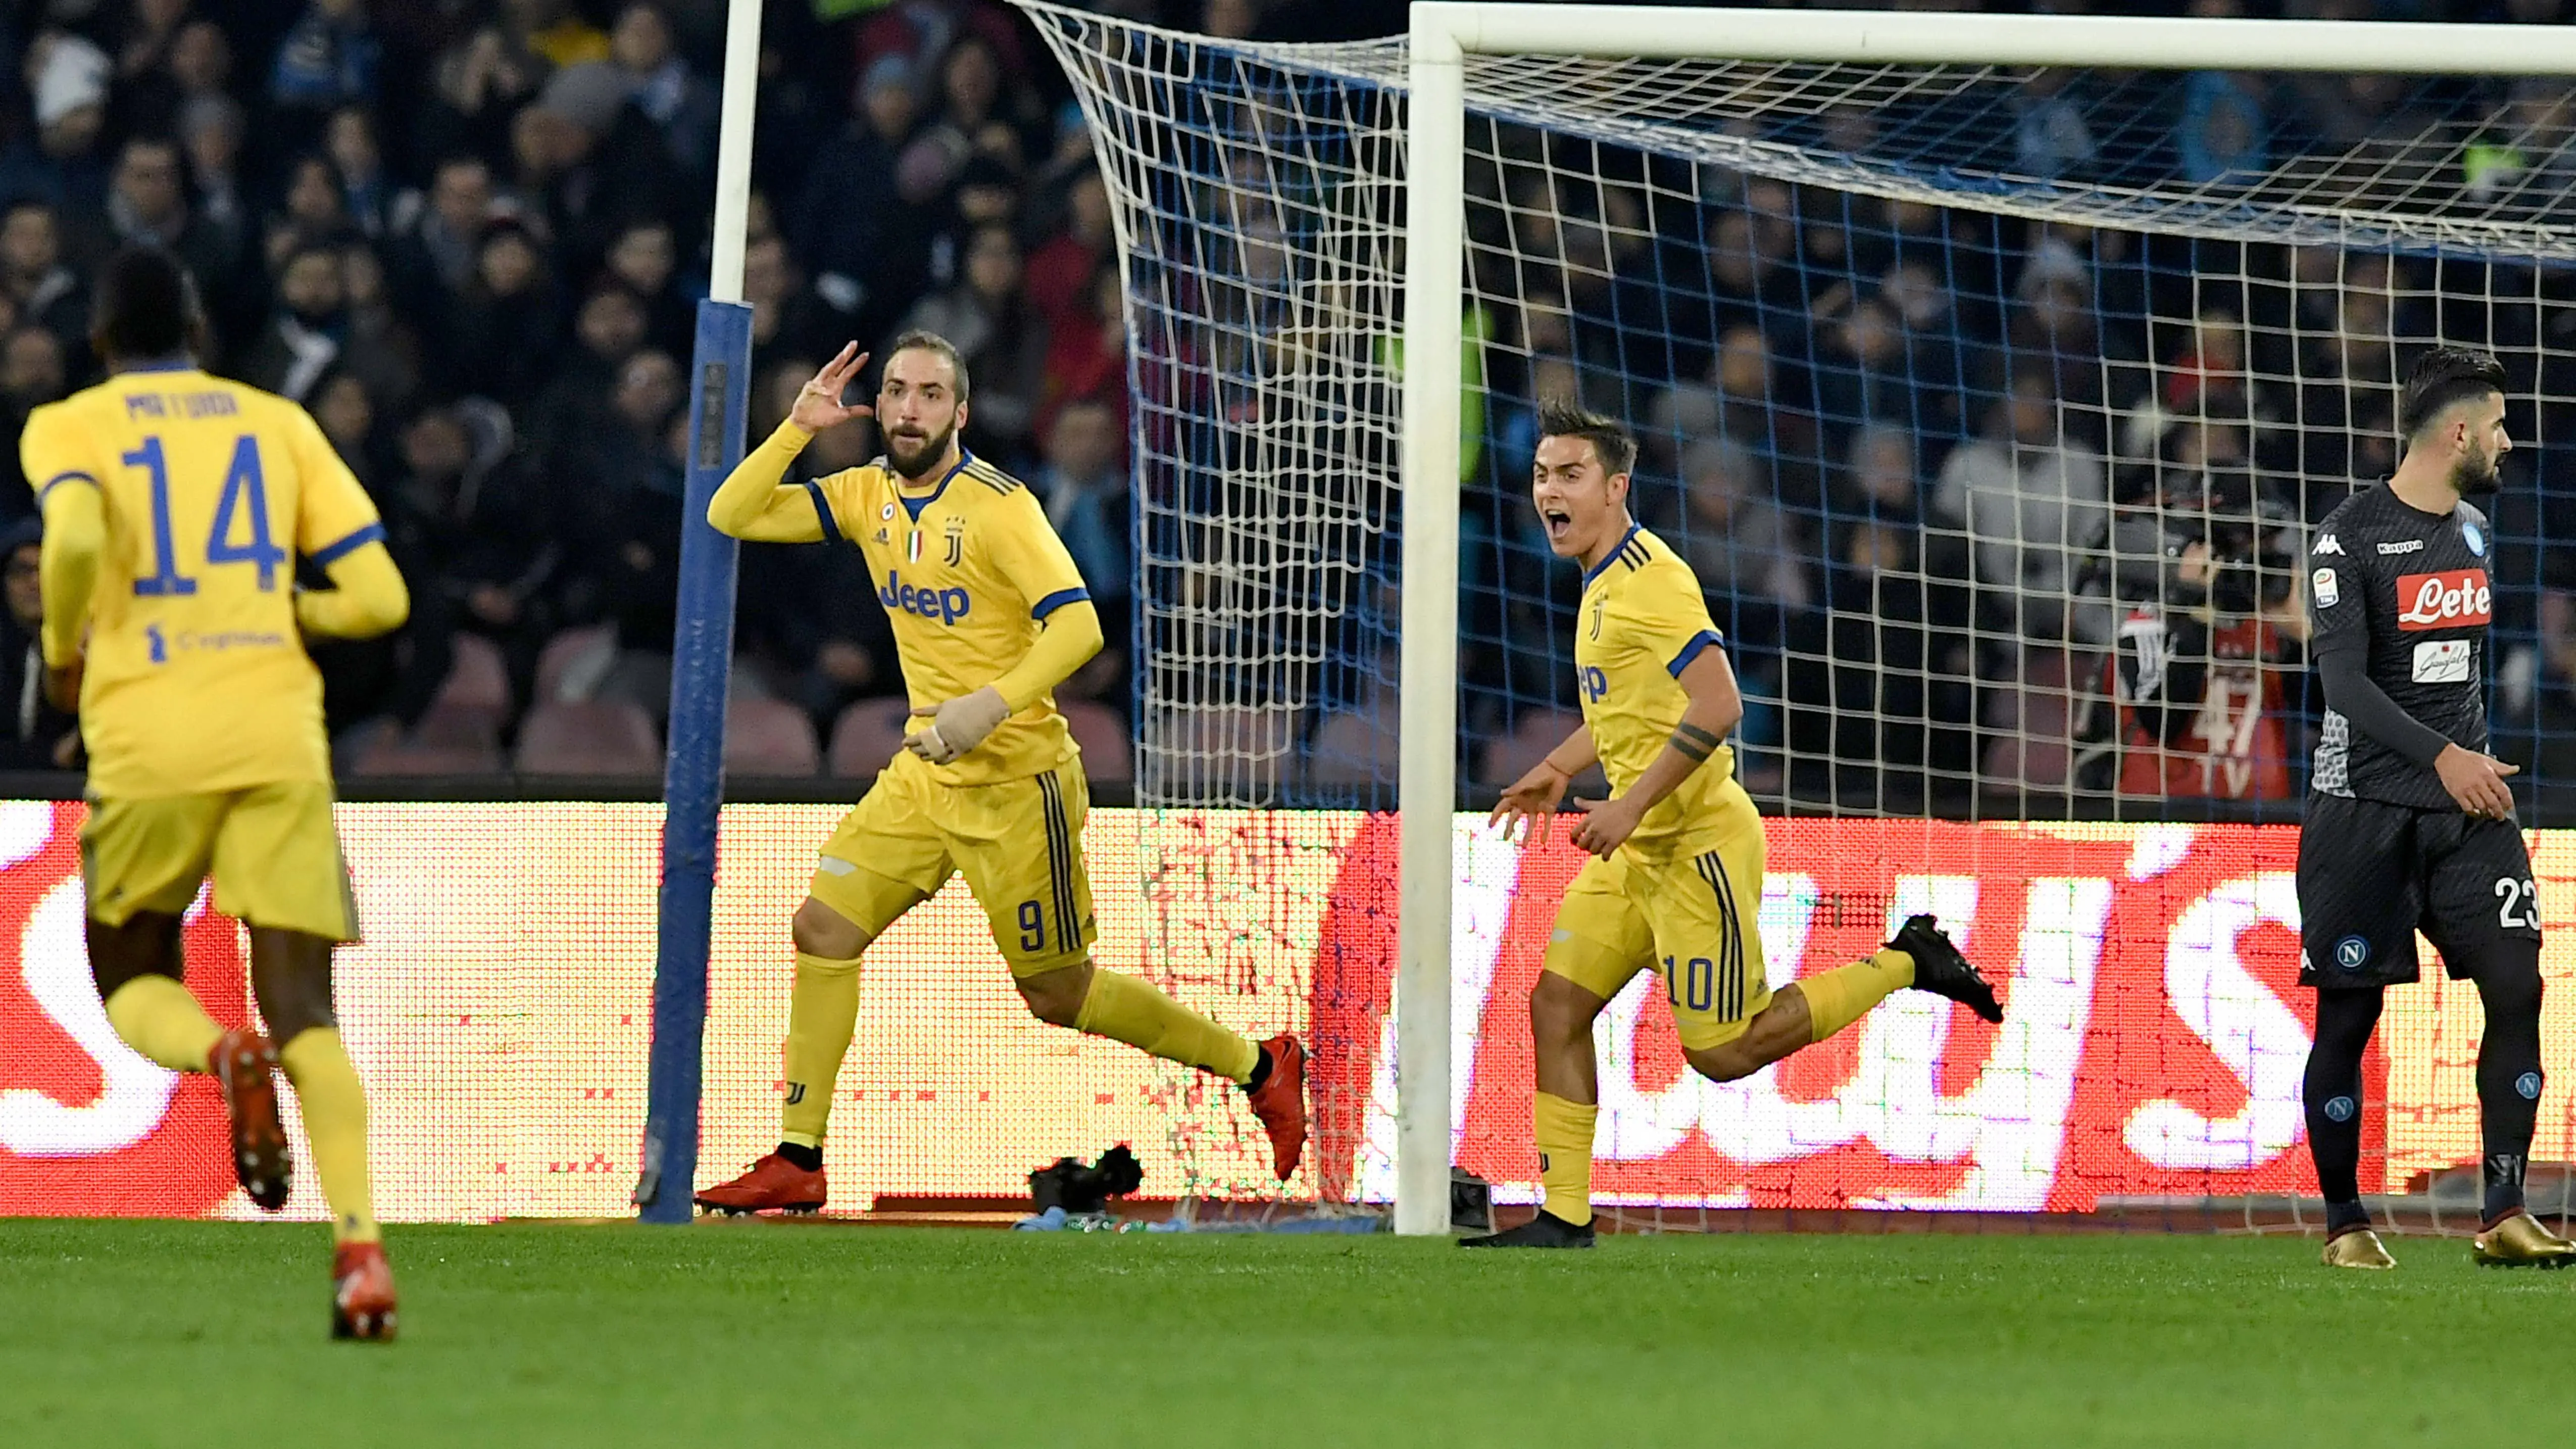 Pemain Juventus, Gonzalo Higuain (2 dari kiri) merayakan gol ke gawang Napoli pada lanjutan Serie A Italia di San Paolo stadium, Naples, (1/12/2017). (AFP/Tiziana Fabi)